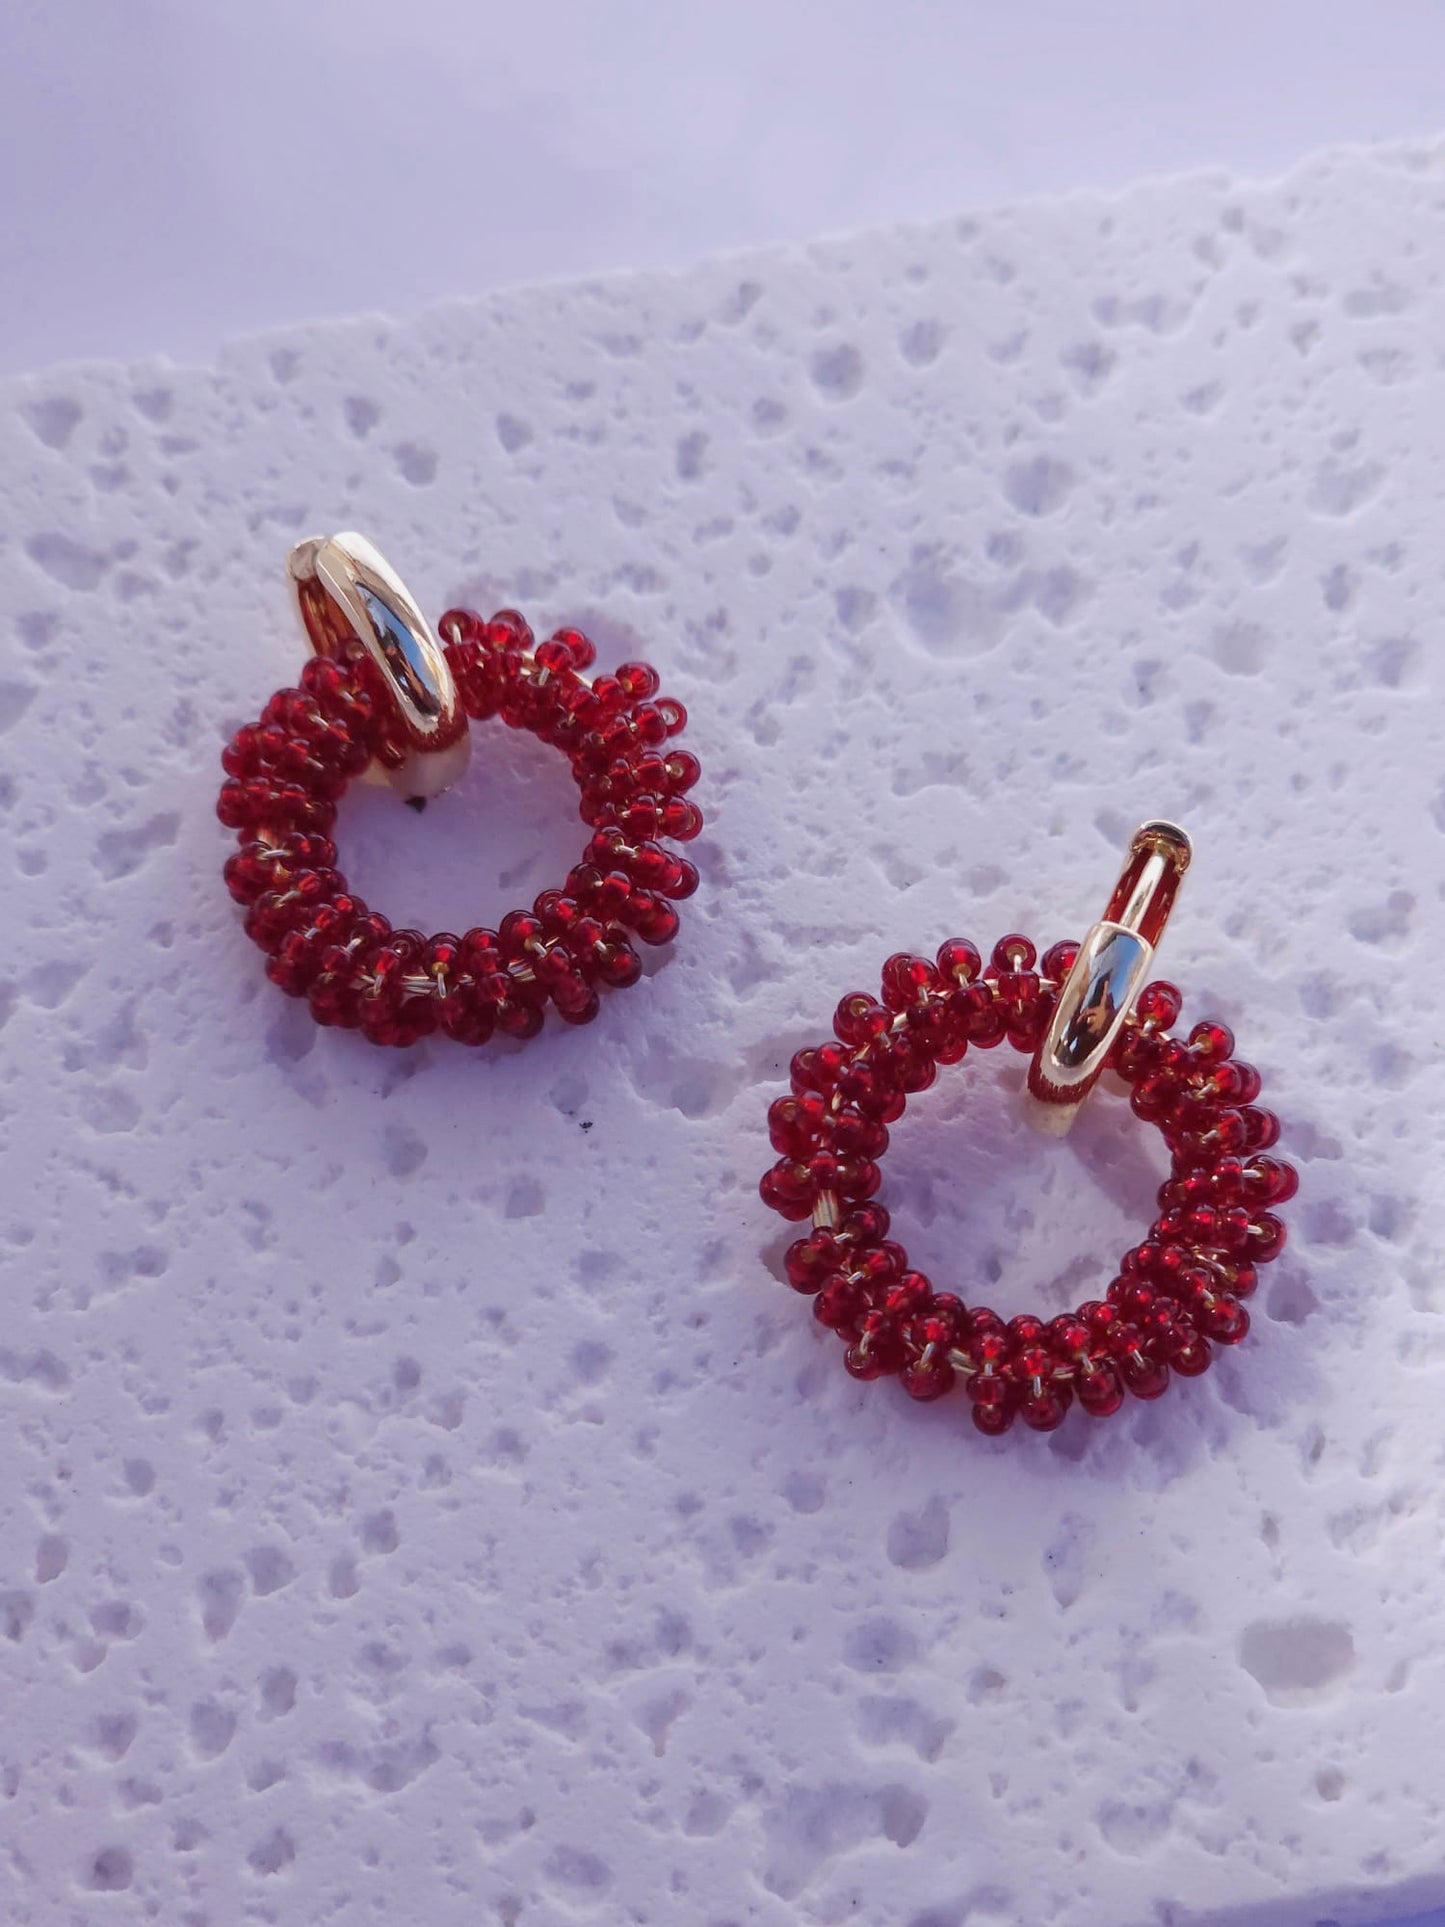 Infinity Mini Earrings Red wine  - Handmade Artisan Jewelry with Japanese Miyuki Beads